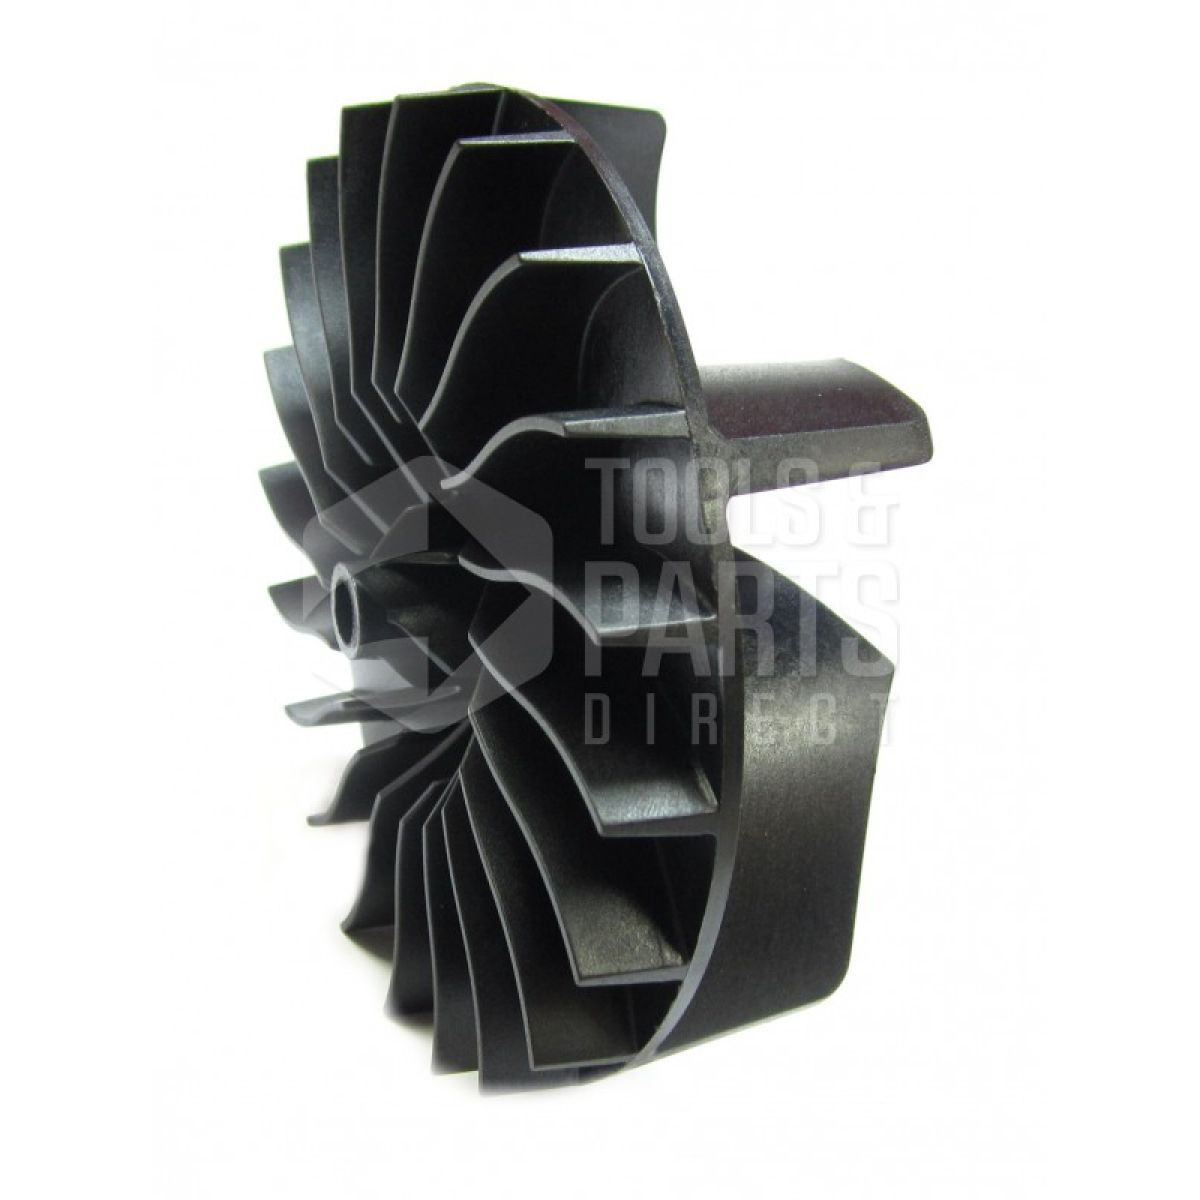 Black & Decker GW225 Type 1 Blowvac Spare Parts - Part Shop Direct